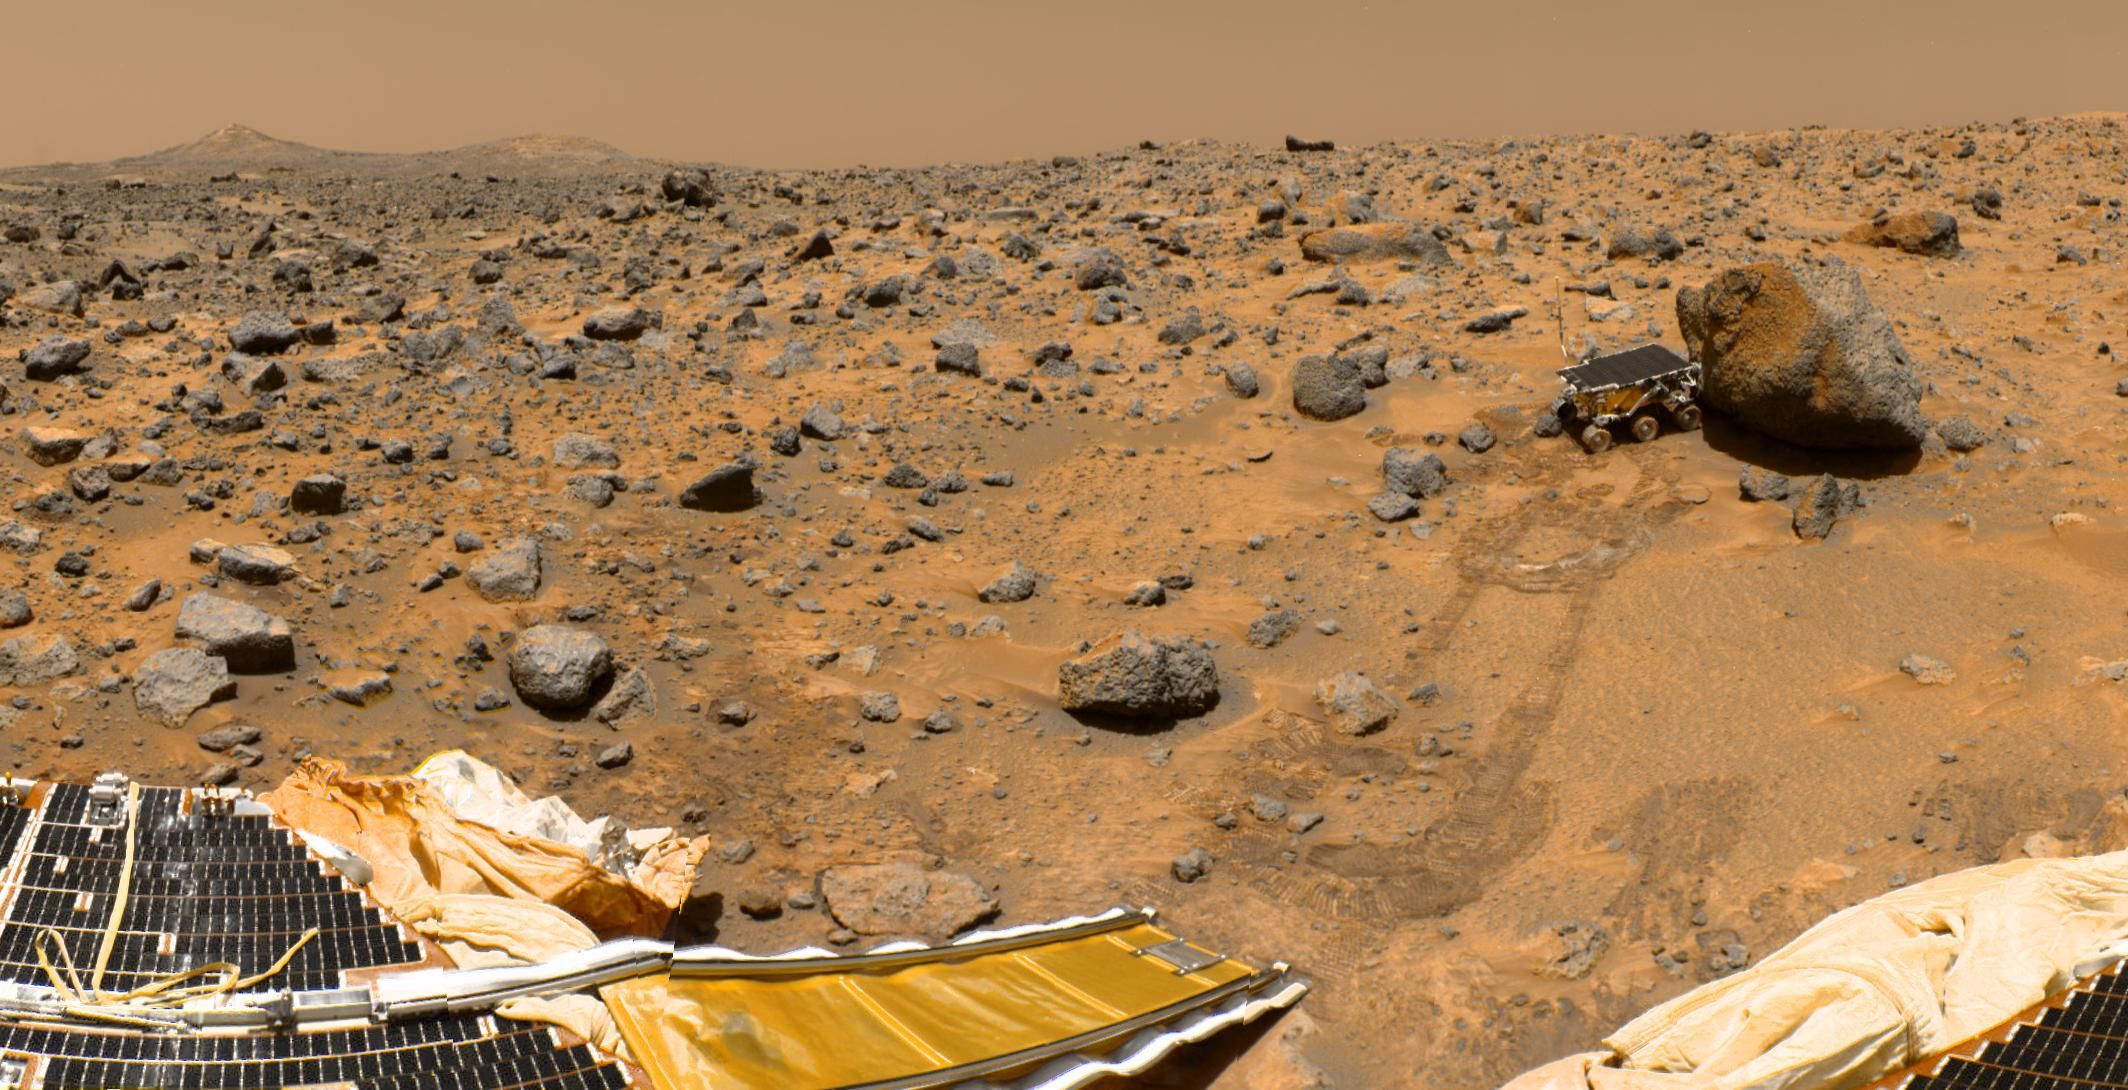 Als erster fahrender Roboter rollt Sojourner 1992 von seiner Lande-Plattform auf die Marsoberfläche.